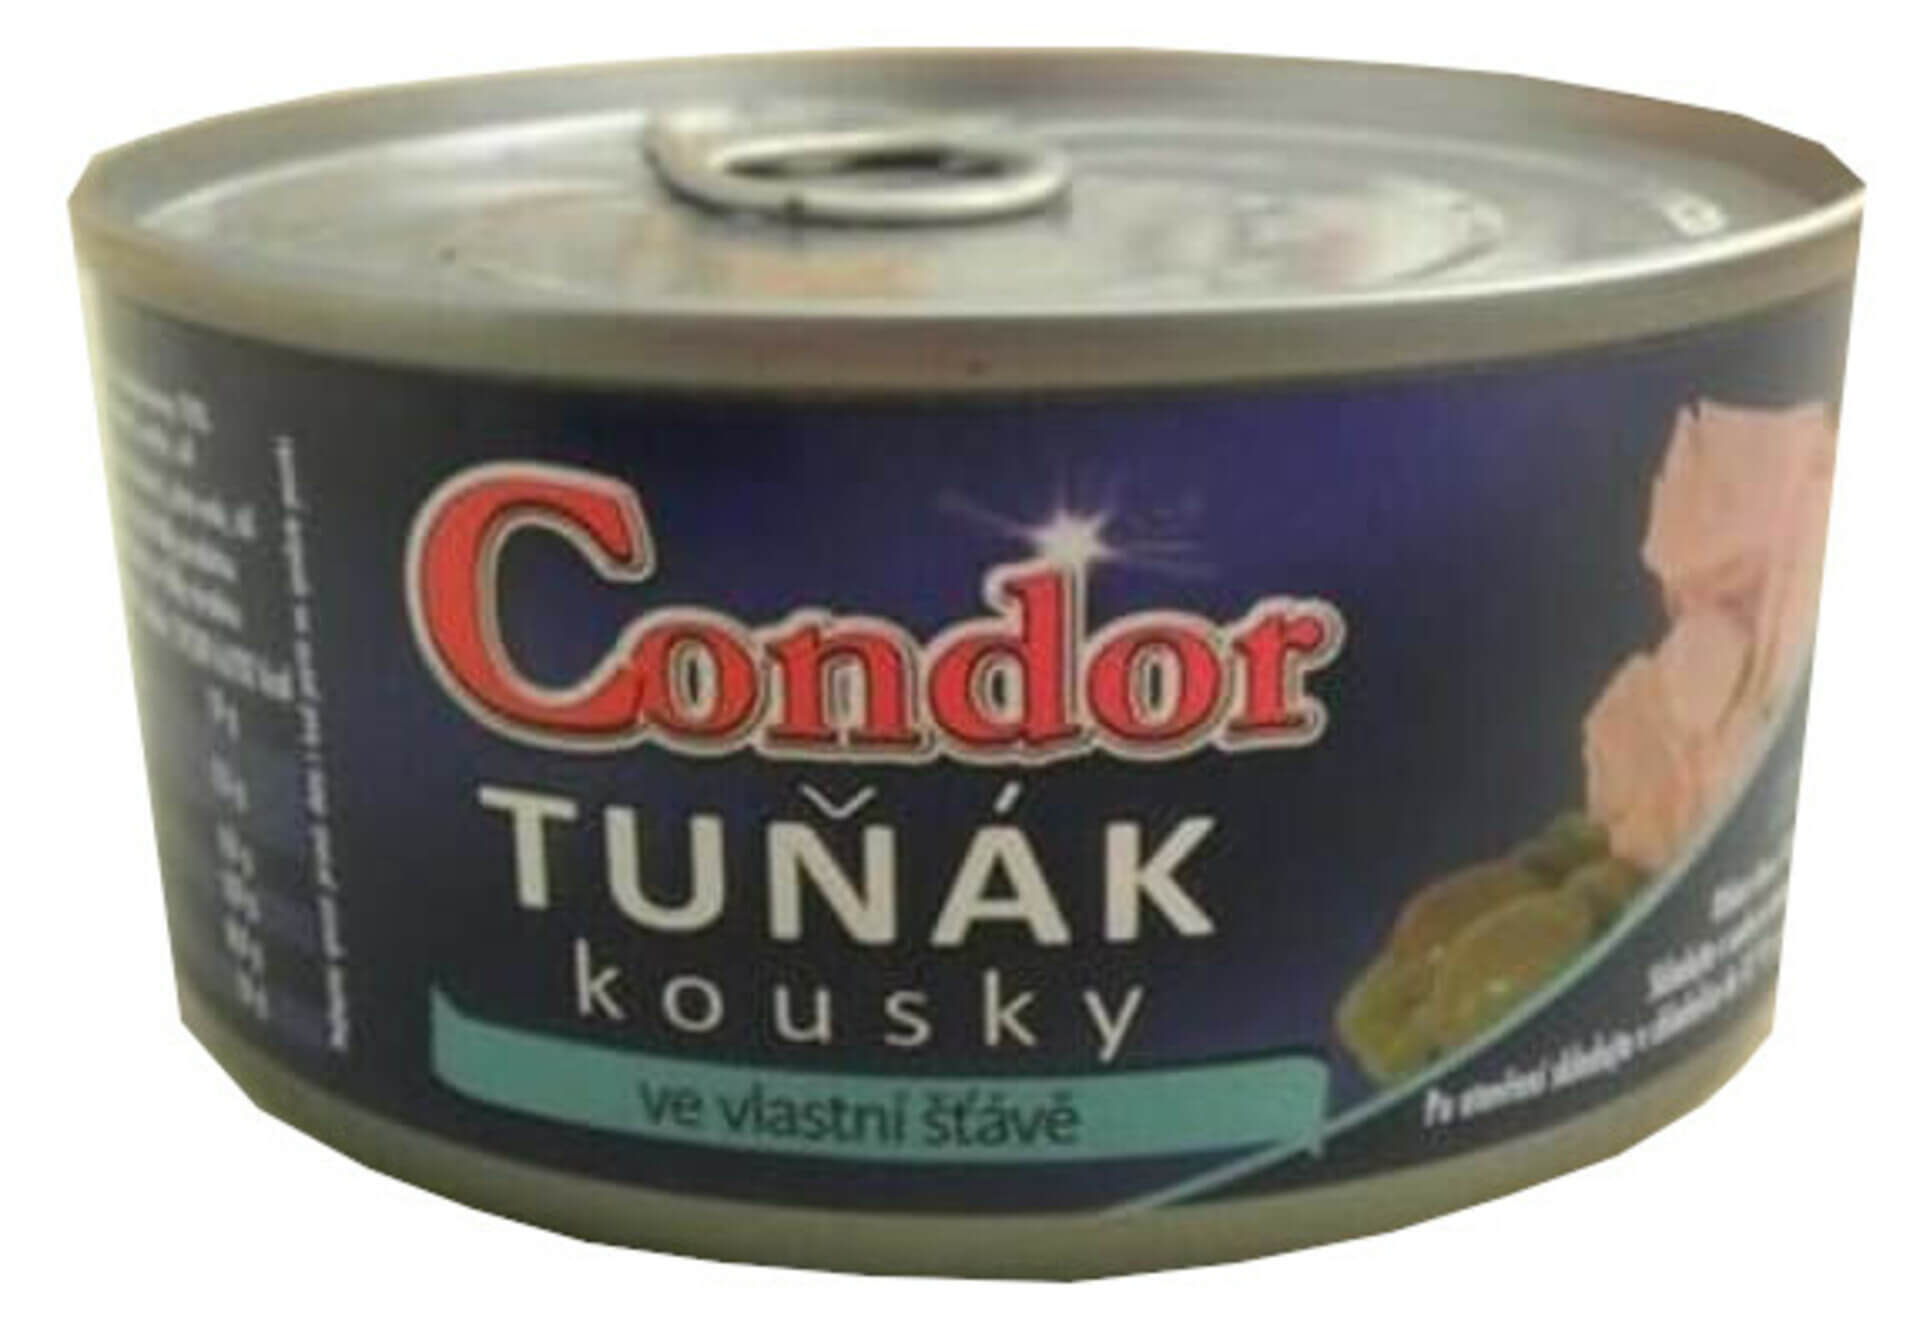 E-shop Condor Tuniak kúsky vo vlastnej šťave (plechovka) 170 g